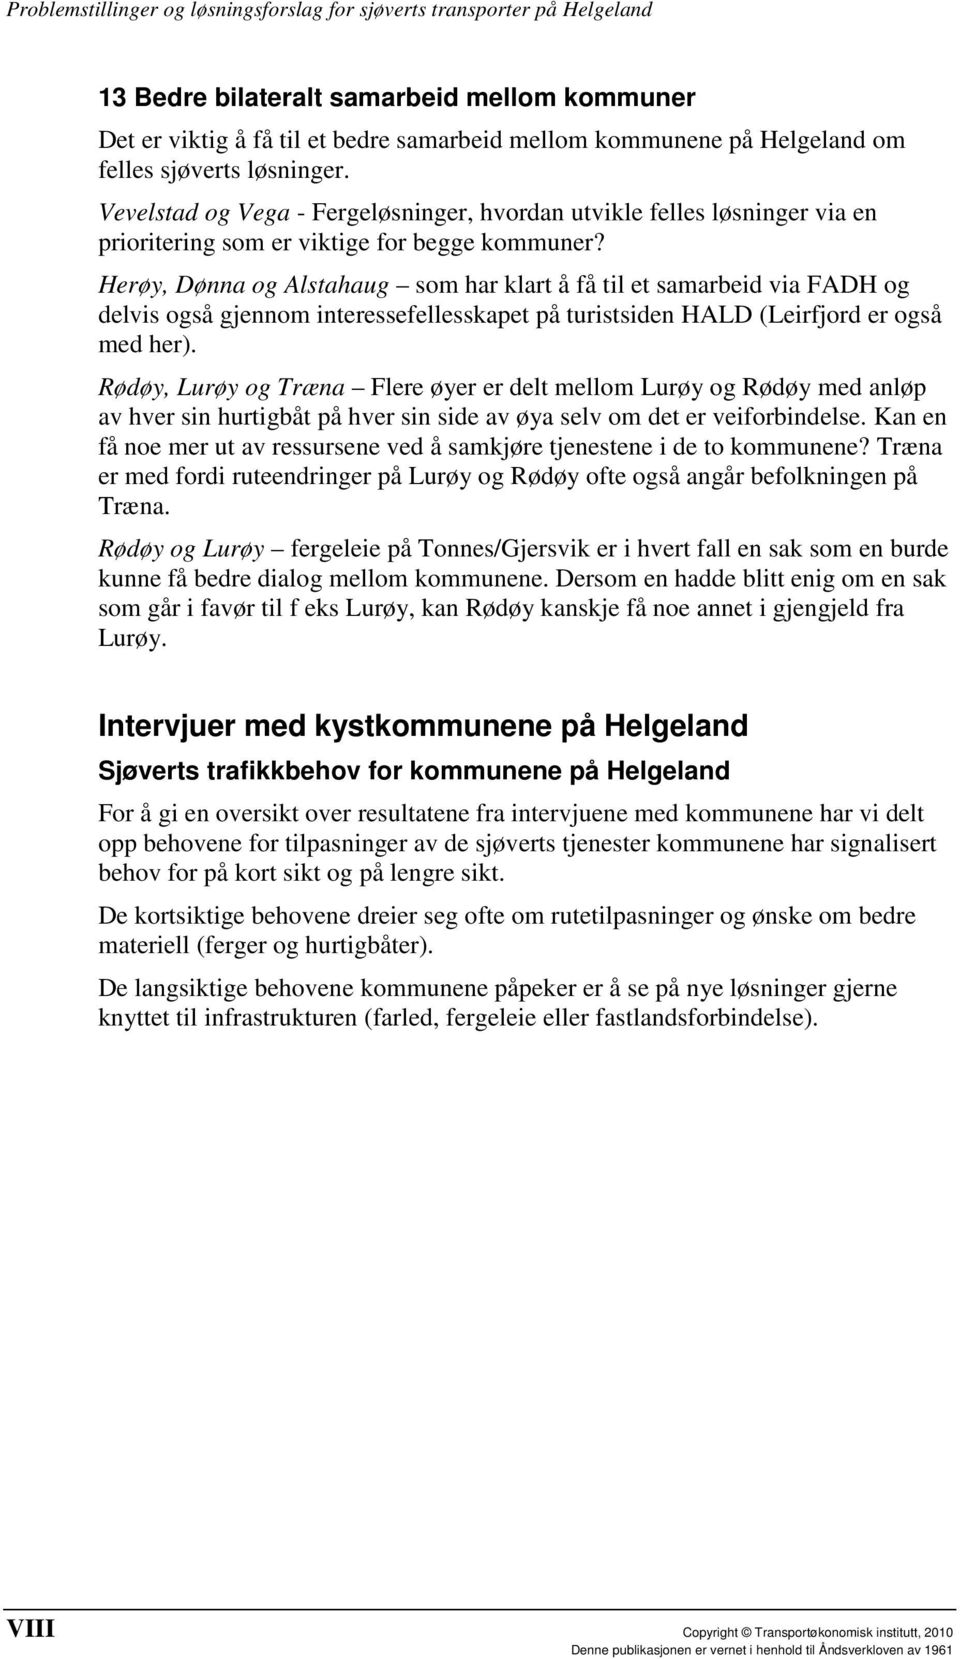 Herøy, Dønna og Alstahaug som har klart å få til et samarbeid via FADH og delvis også gjennom interessefellesskapet på turistsiden HALD (Leirfjord er også med her).